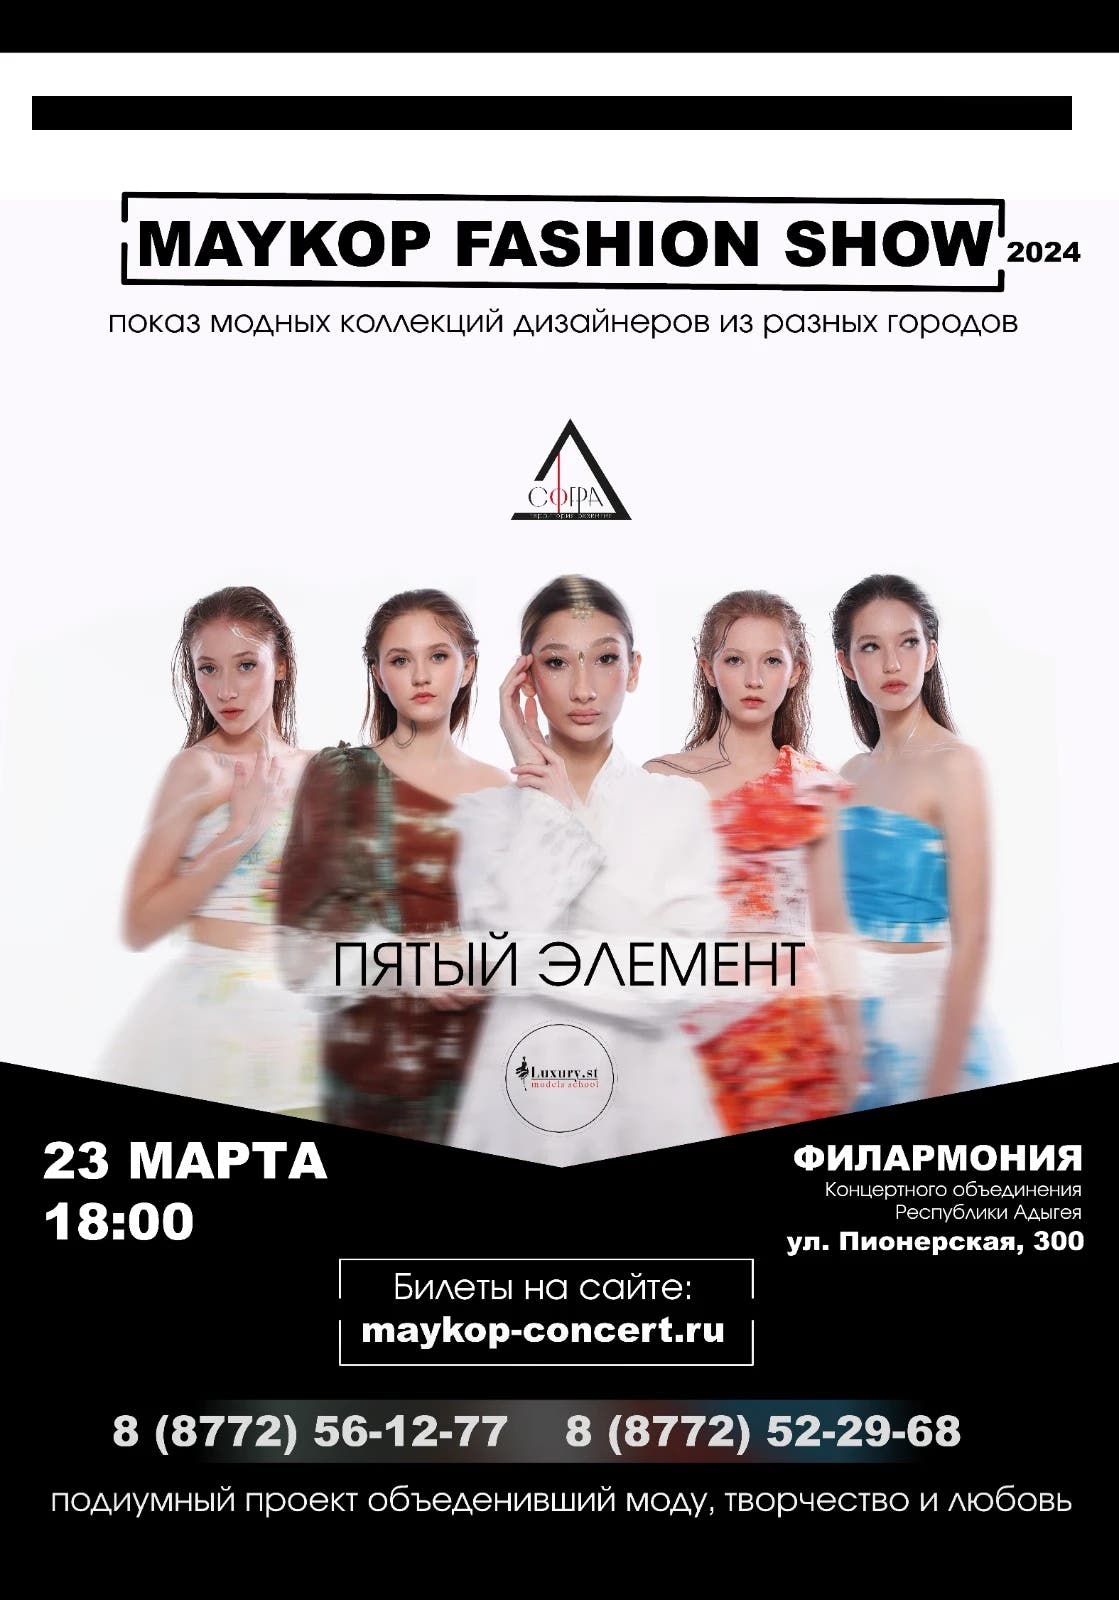 Концерт Культурно-массовое мероприятие MAYKOP FASHION SHOW (Модный показ)